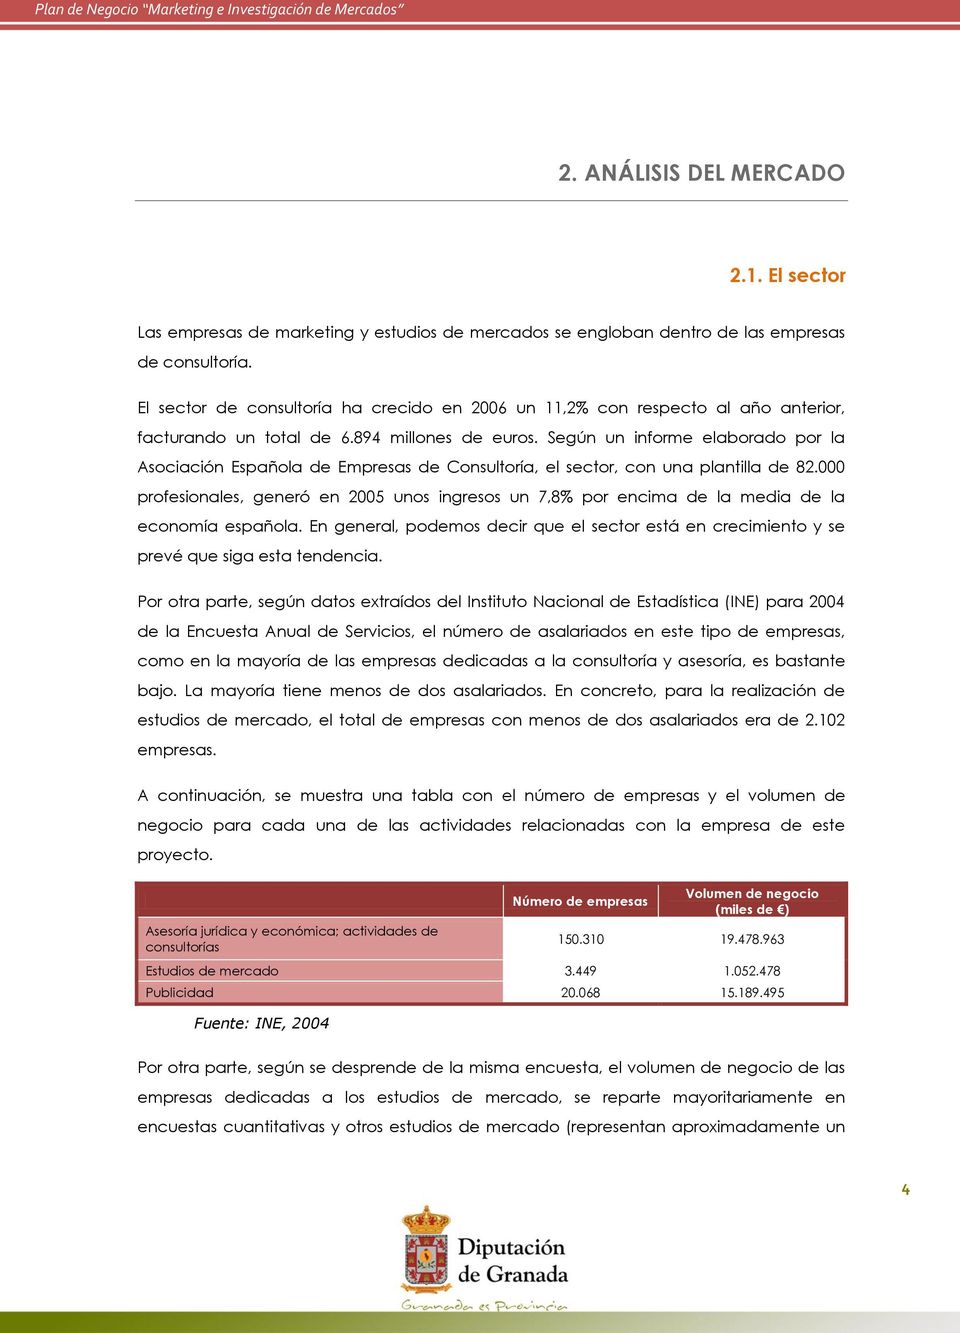 Según un informe elaborado por la Asociación Española de Empresas de Consultoría, el sector, con una plantilla de 82.